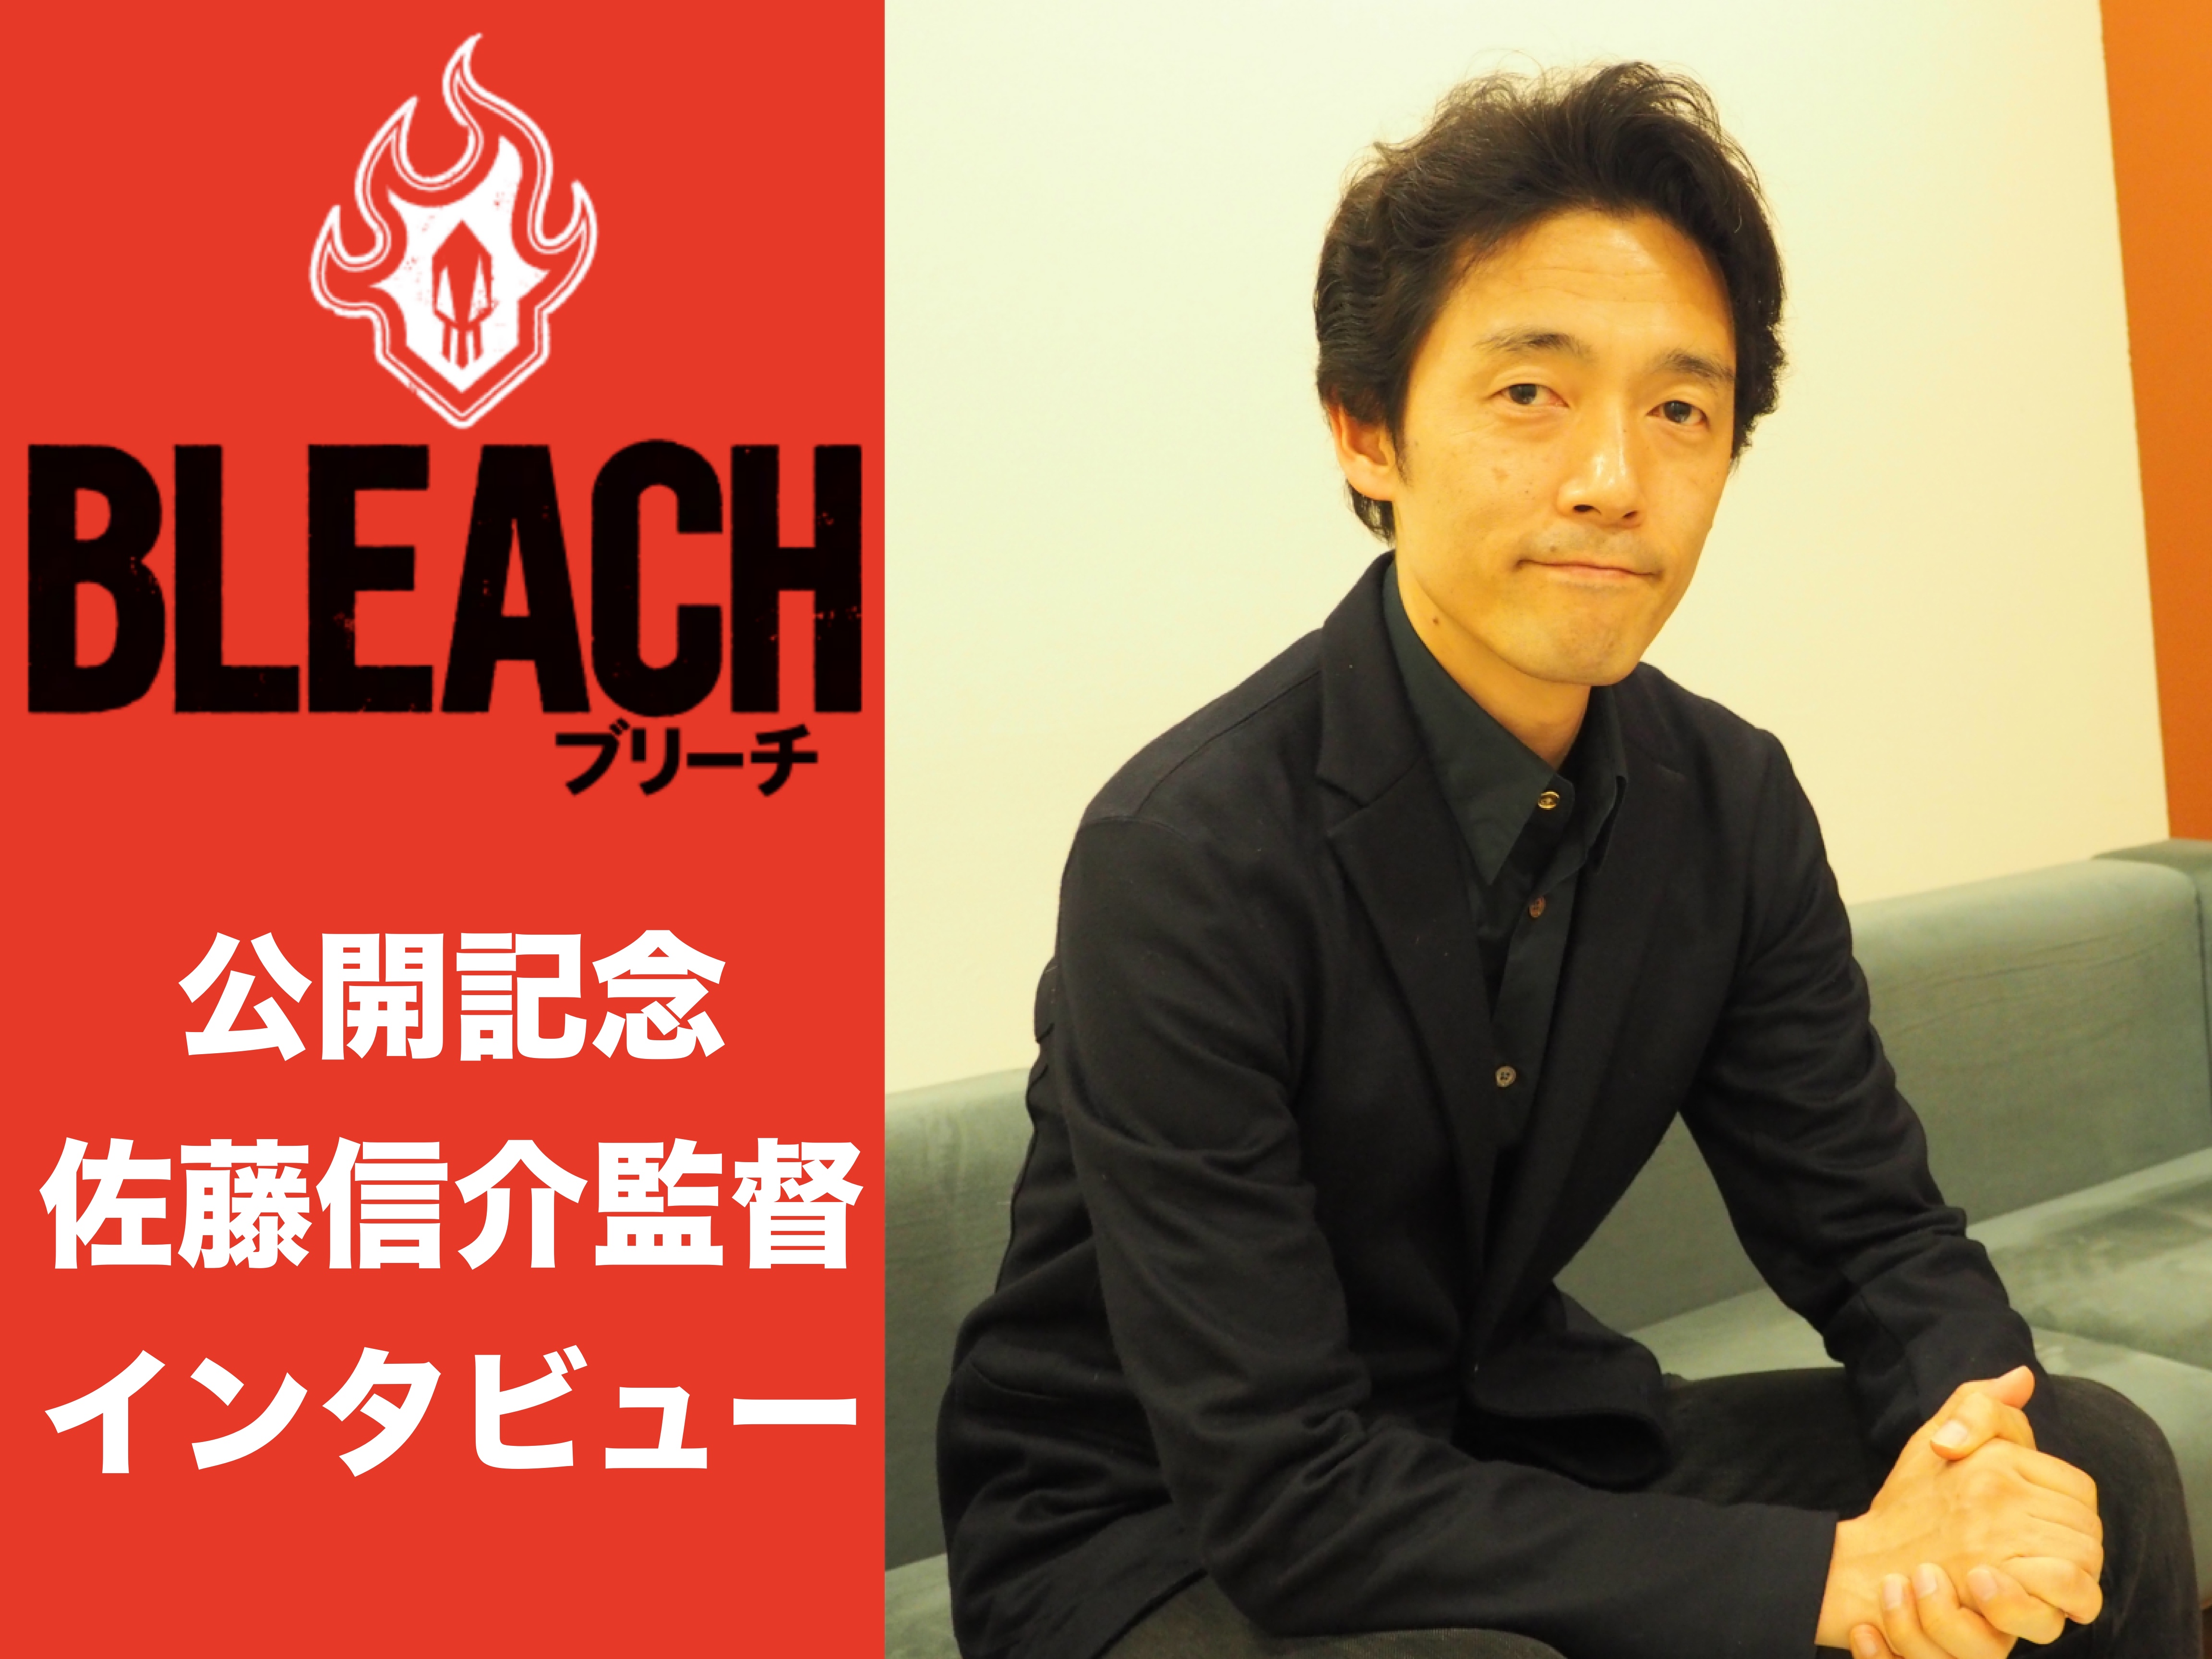 映画『BLEACH』佐藤信介監督インタビュー「そこにあるとしか思えないようなスーパーリアリズムを」-1